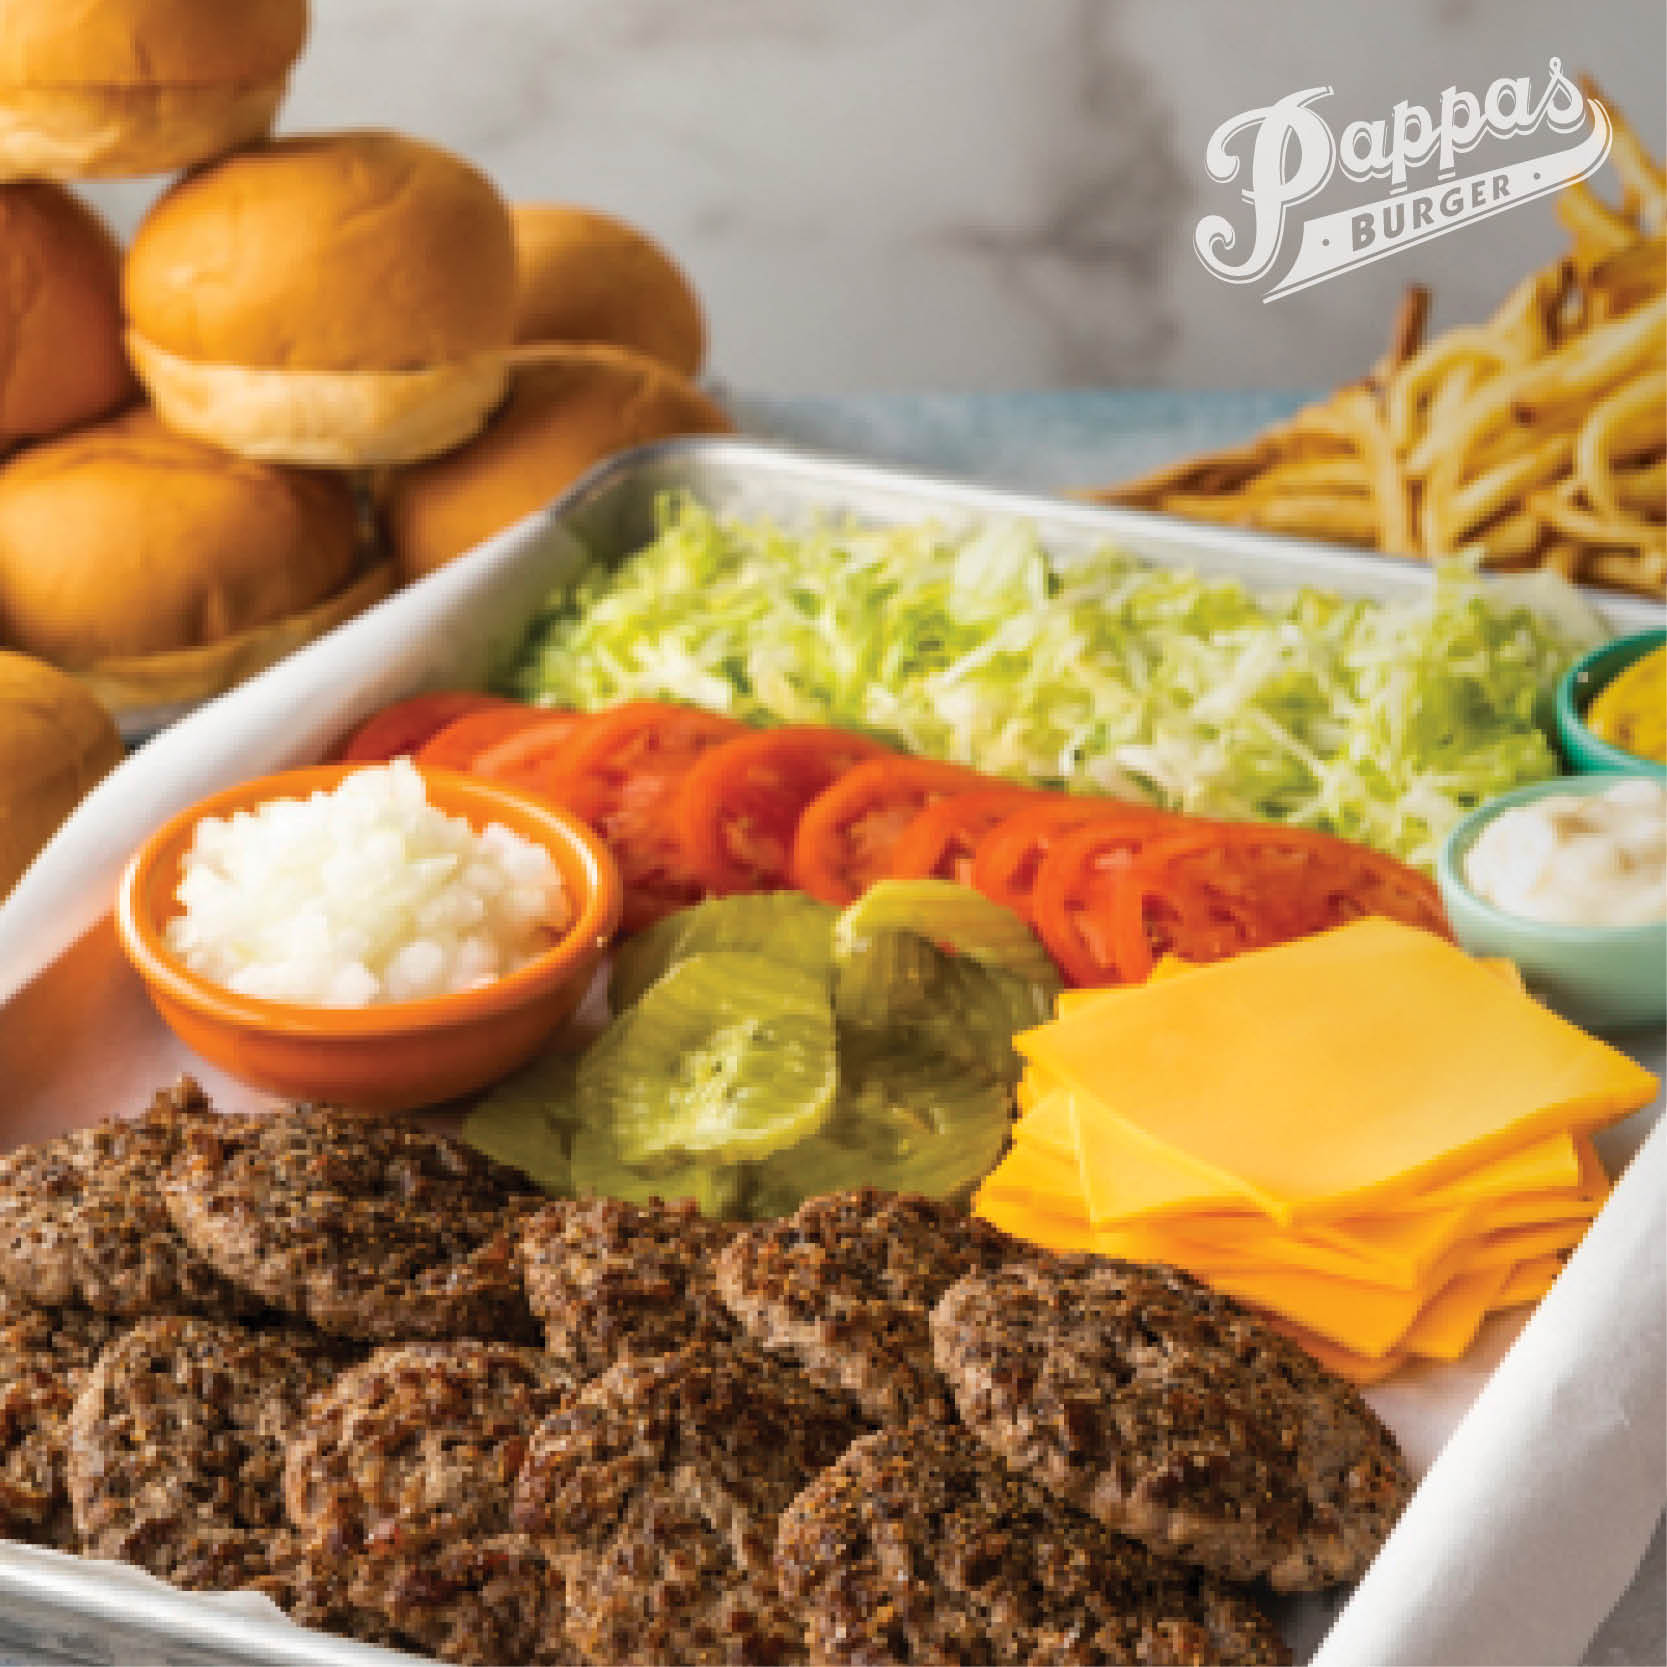 Pappas Burger Building - Picture of Pappas Burger, Houston